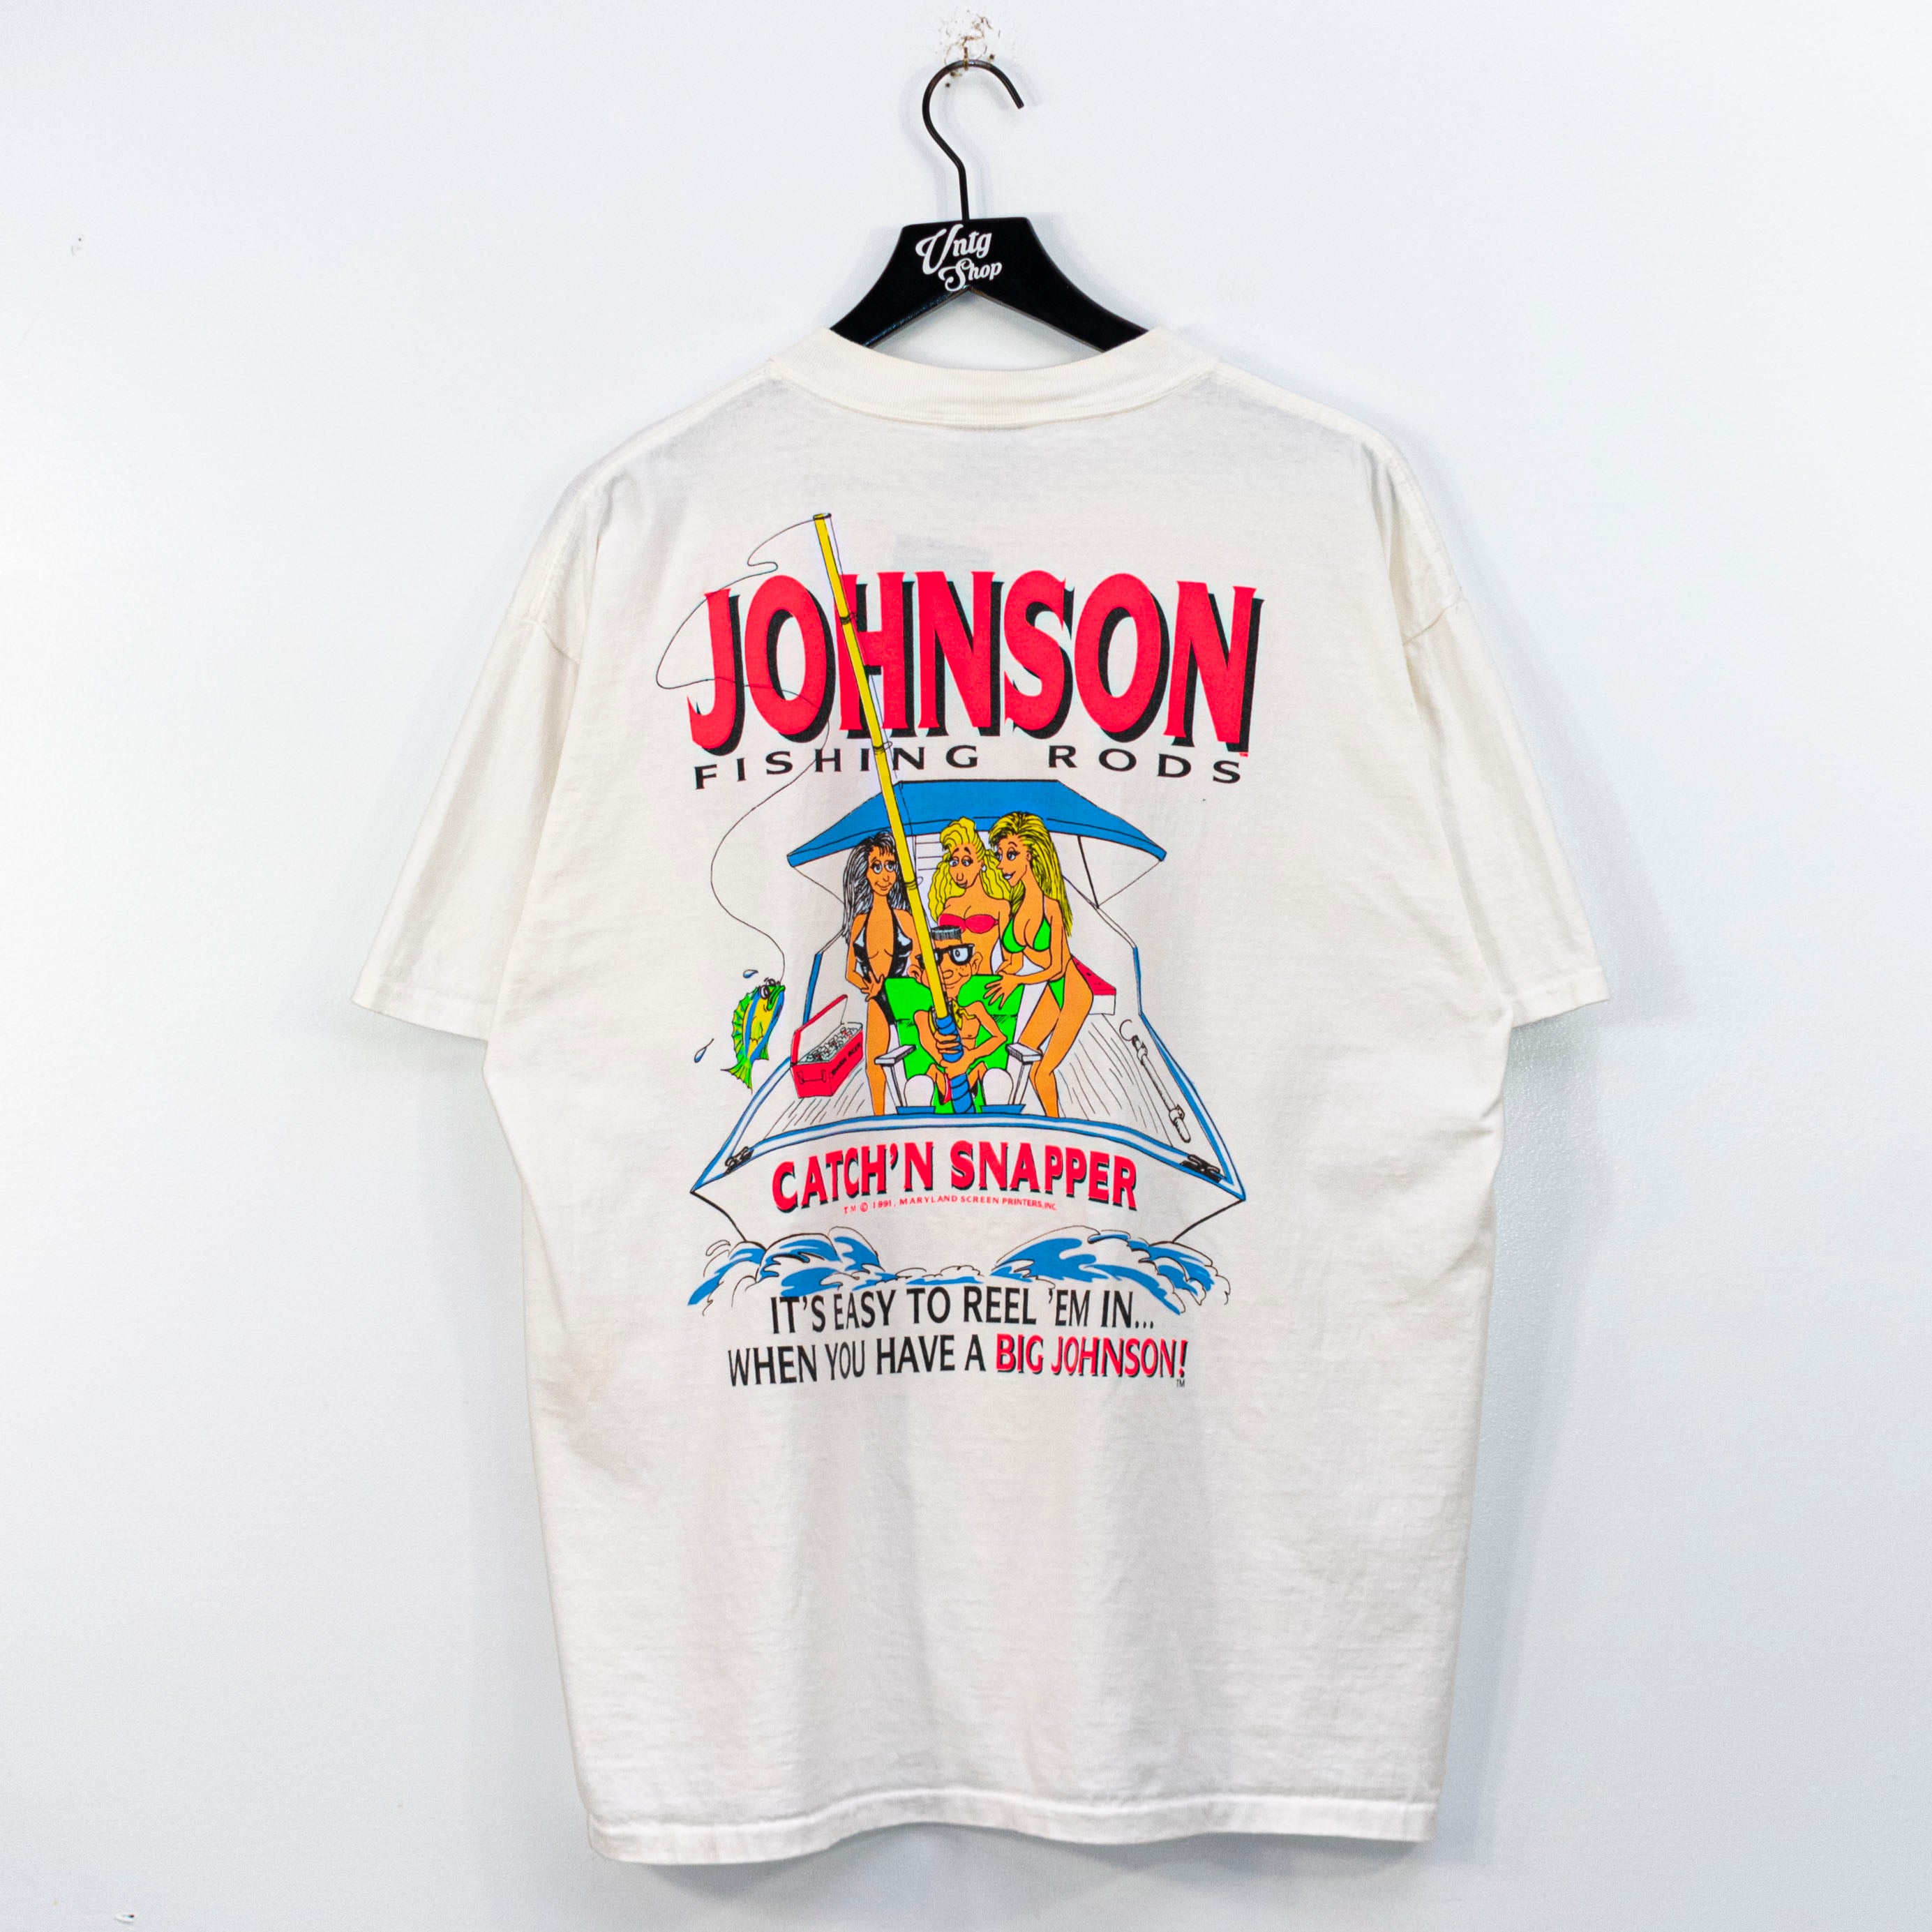 1991 Big Johnson Fishing Rods Catch'N Snapper T-Shirt